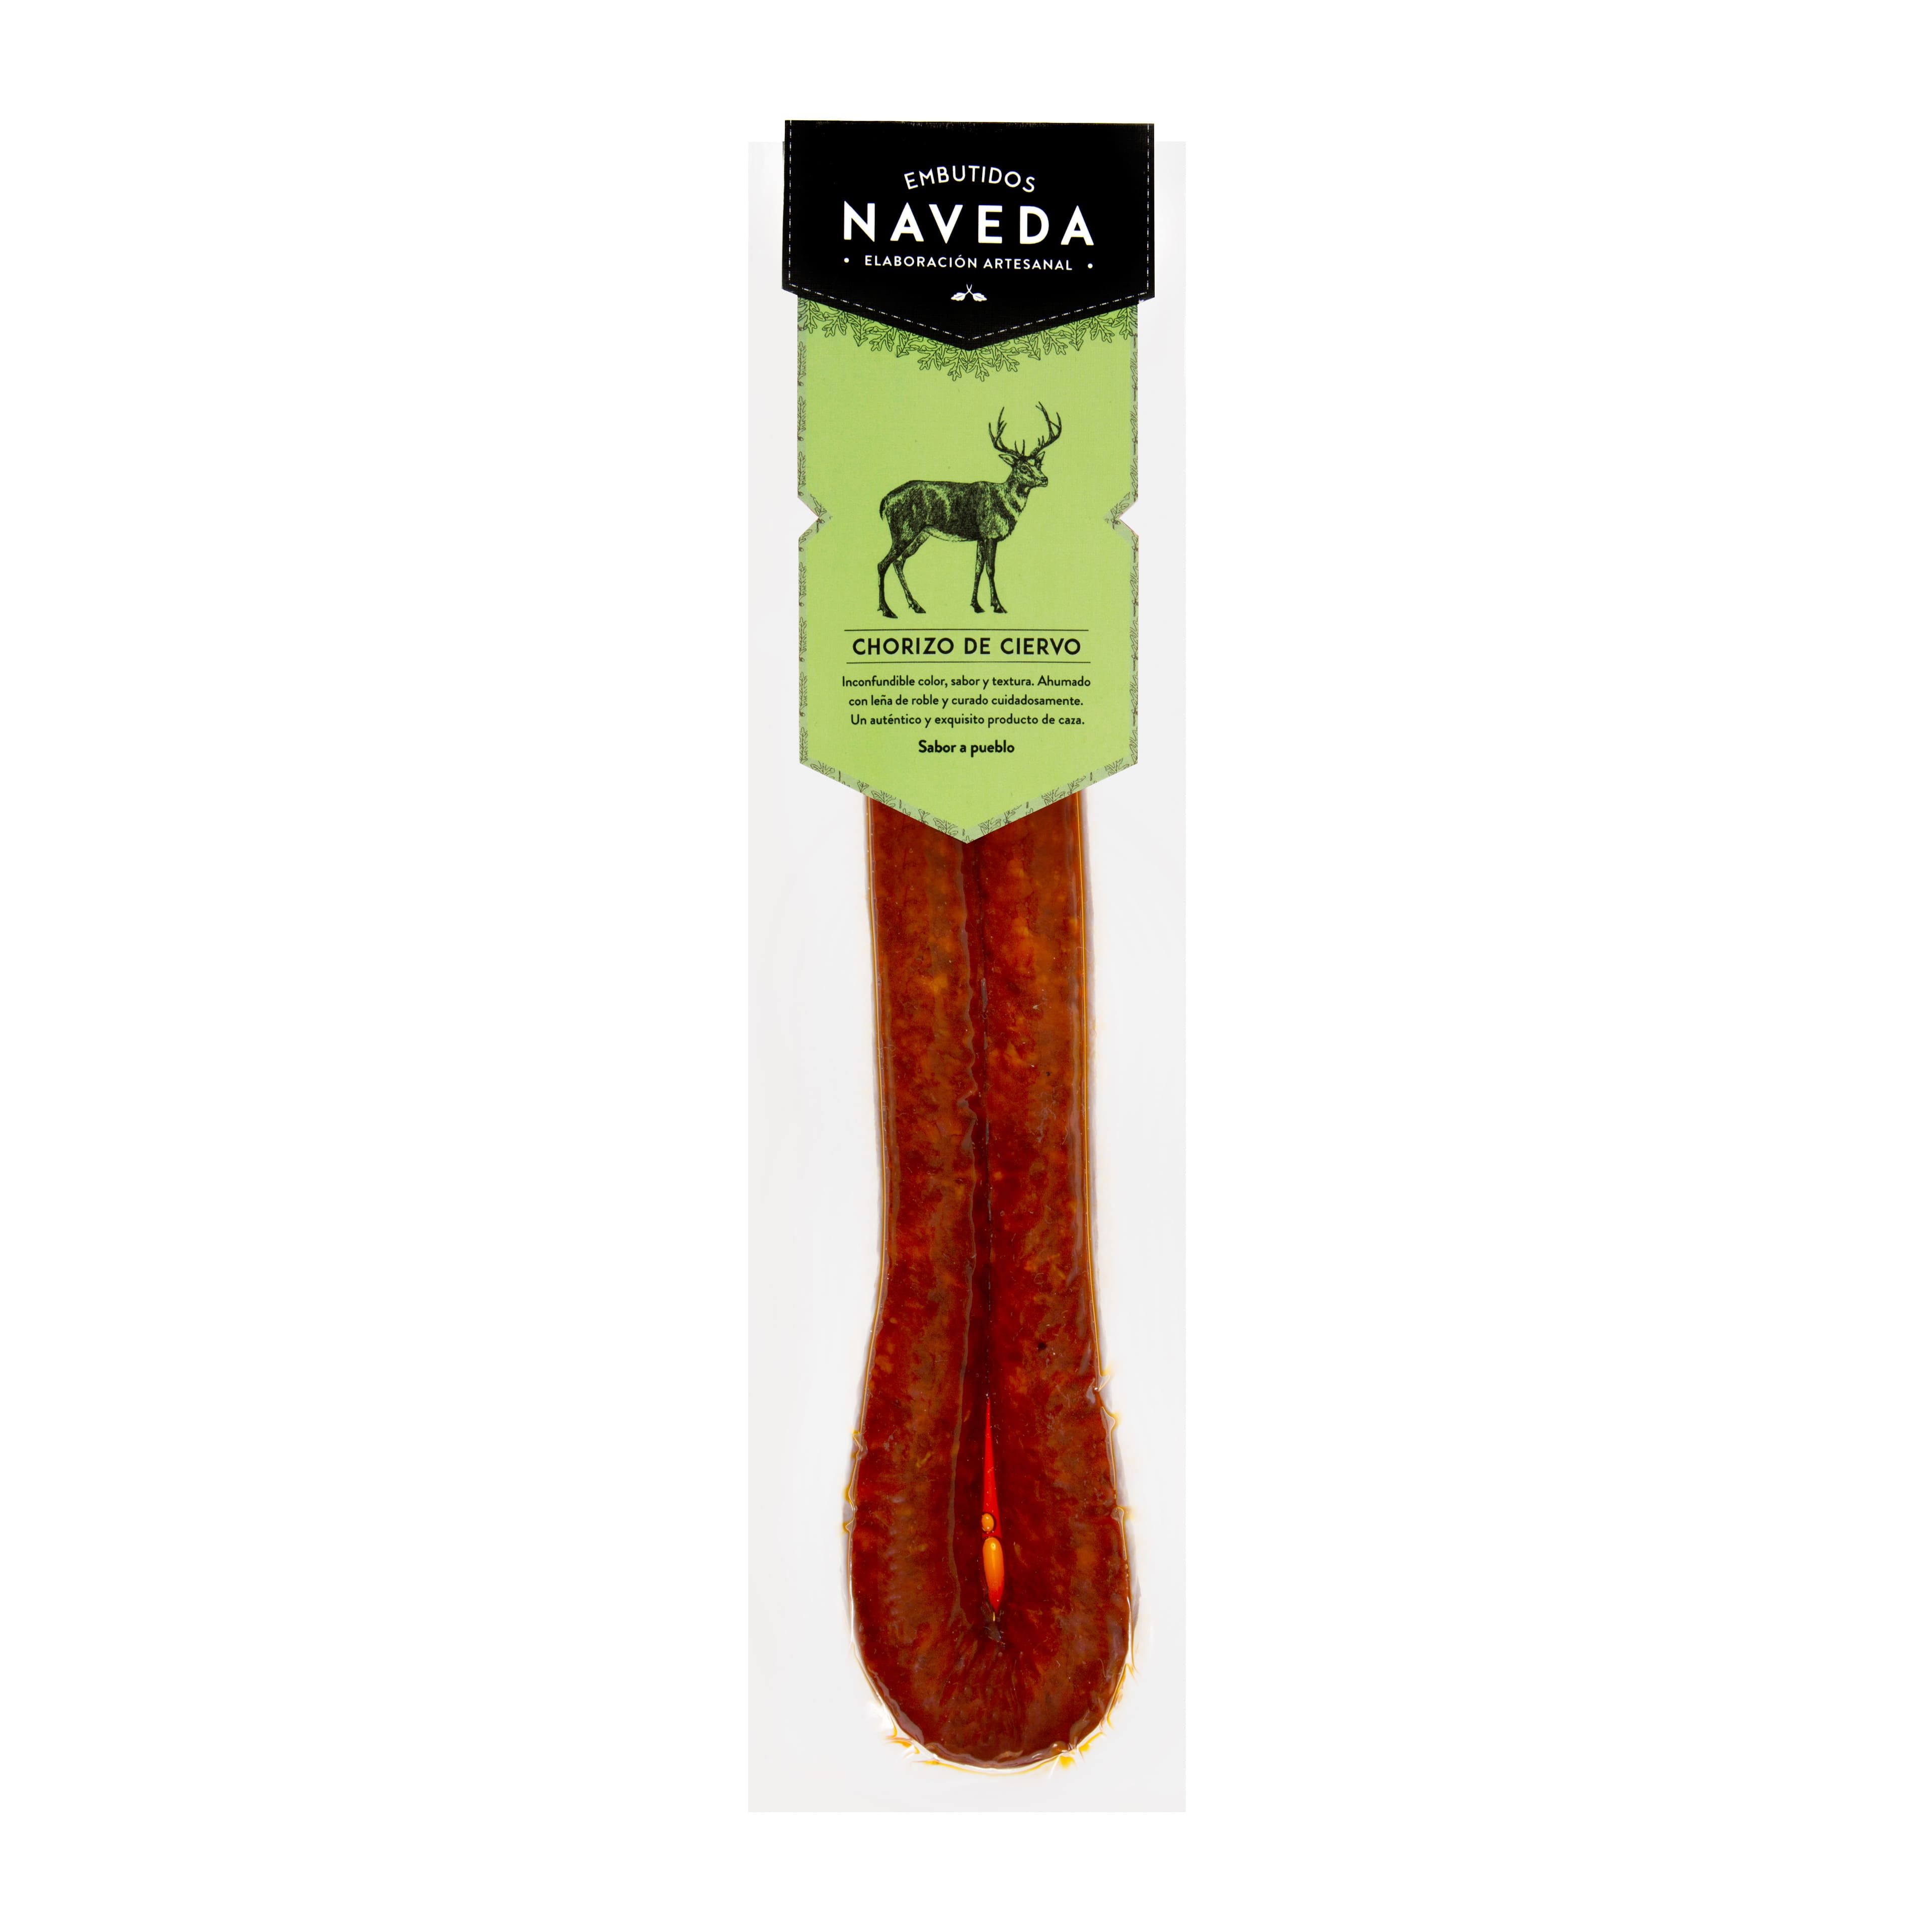 Chorizo de ciervo Naveda, 280g